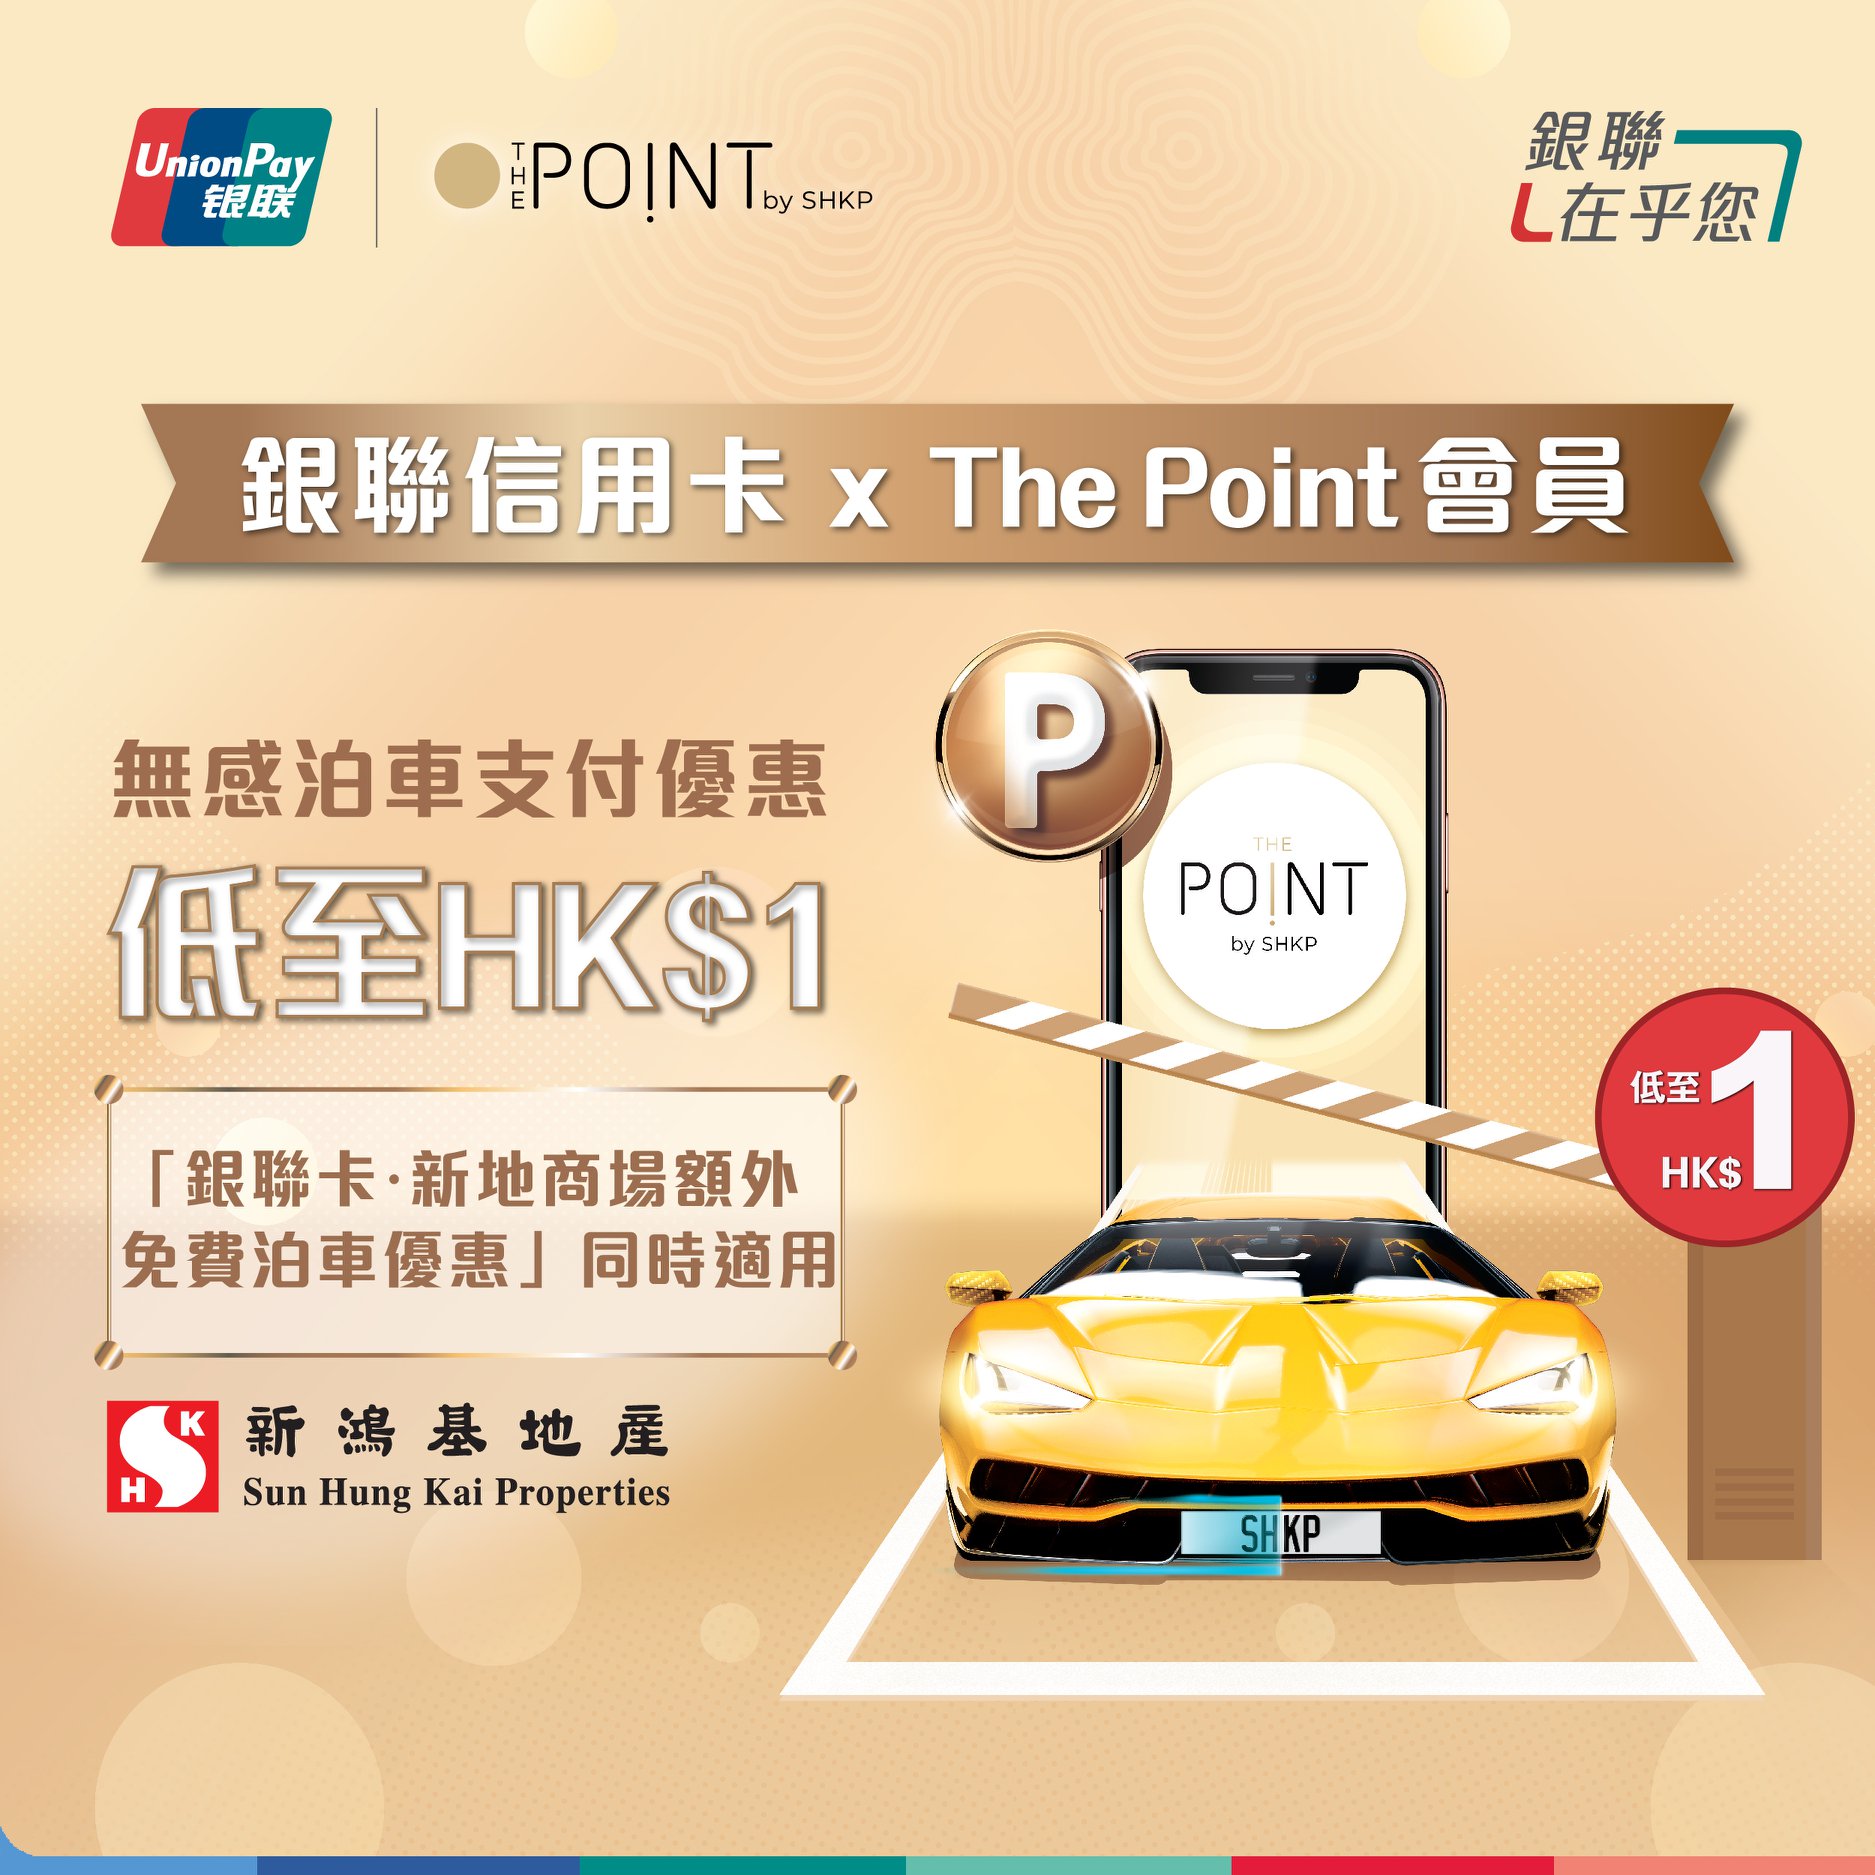 銀聯信用卡新地商場泊車優惠！The Point會員享低至HK$1泊車優惠！